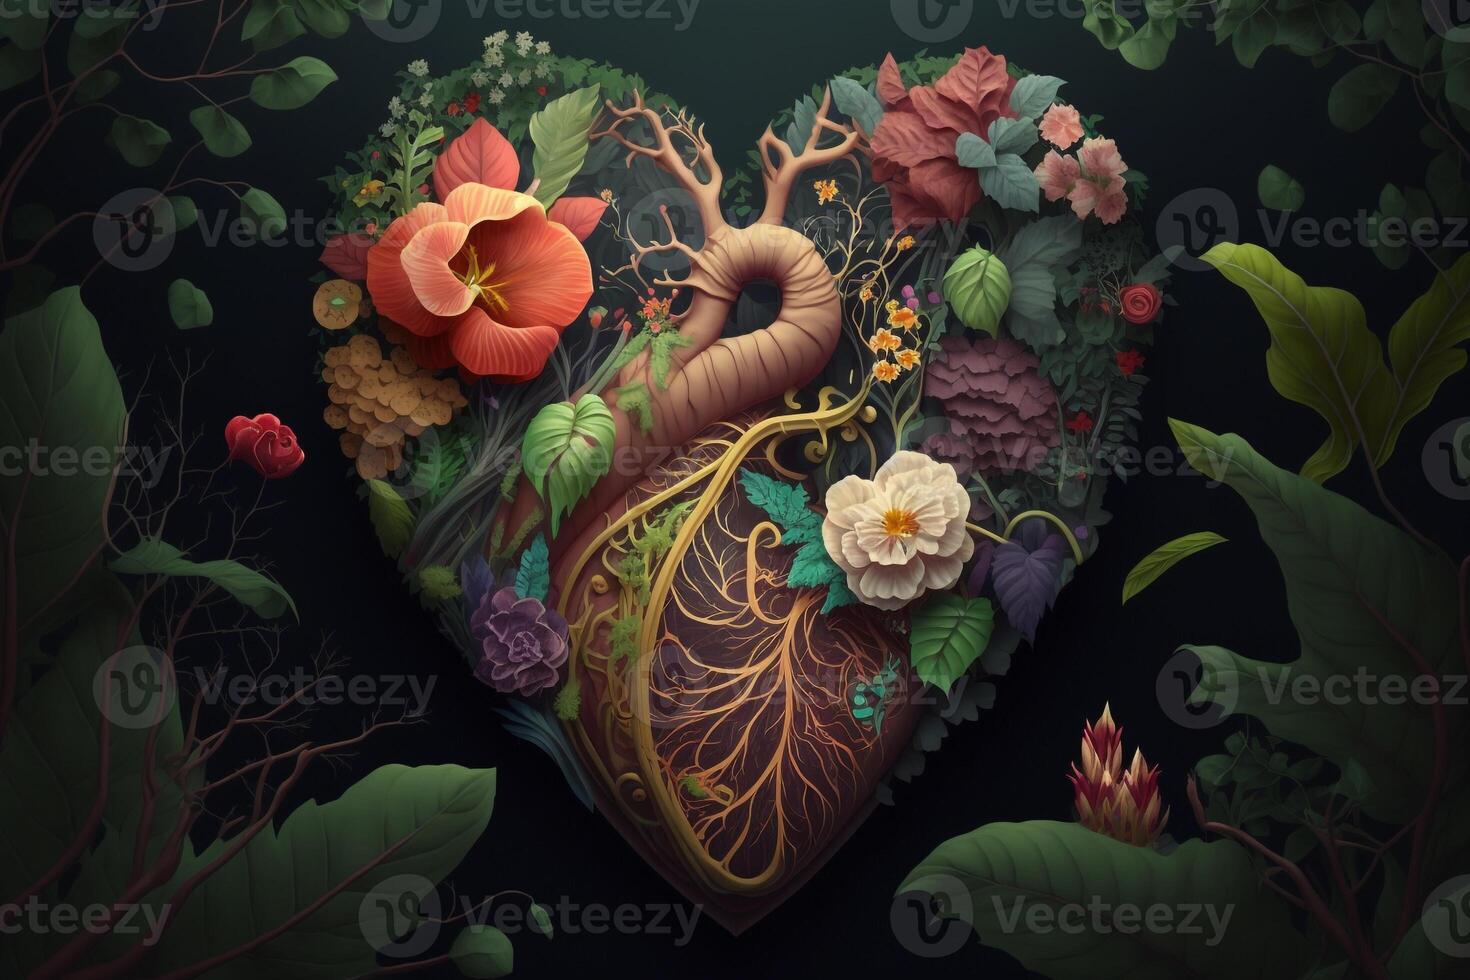 en hjärta den där är omgiven förbi en trädgård av blomning blommor och vibrerande växter, med vinstockar och löv den där verka till växa ut av de organ sig och framkalla känslor av tillväxt och förnyelse. ai genererad foto